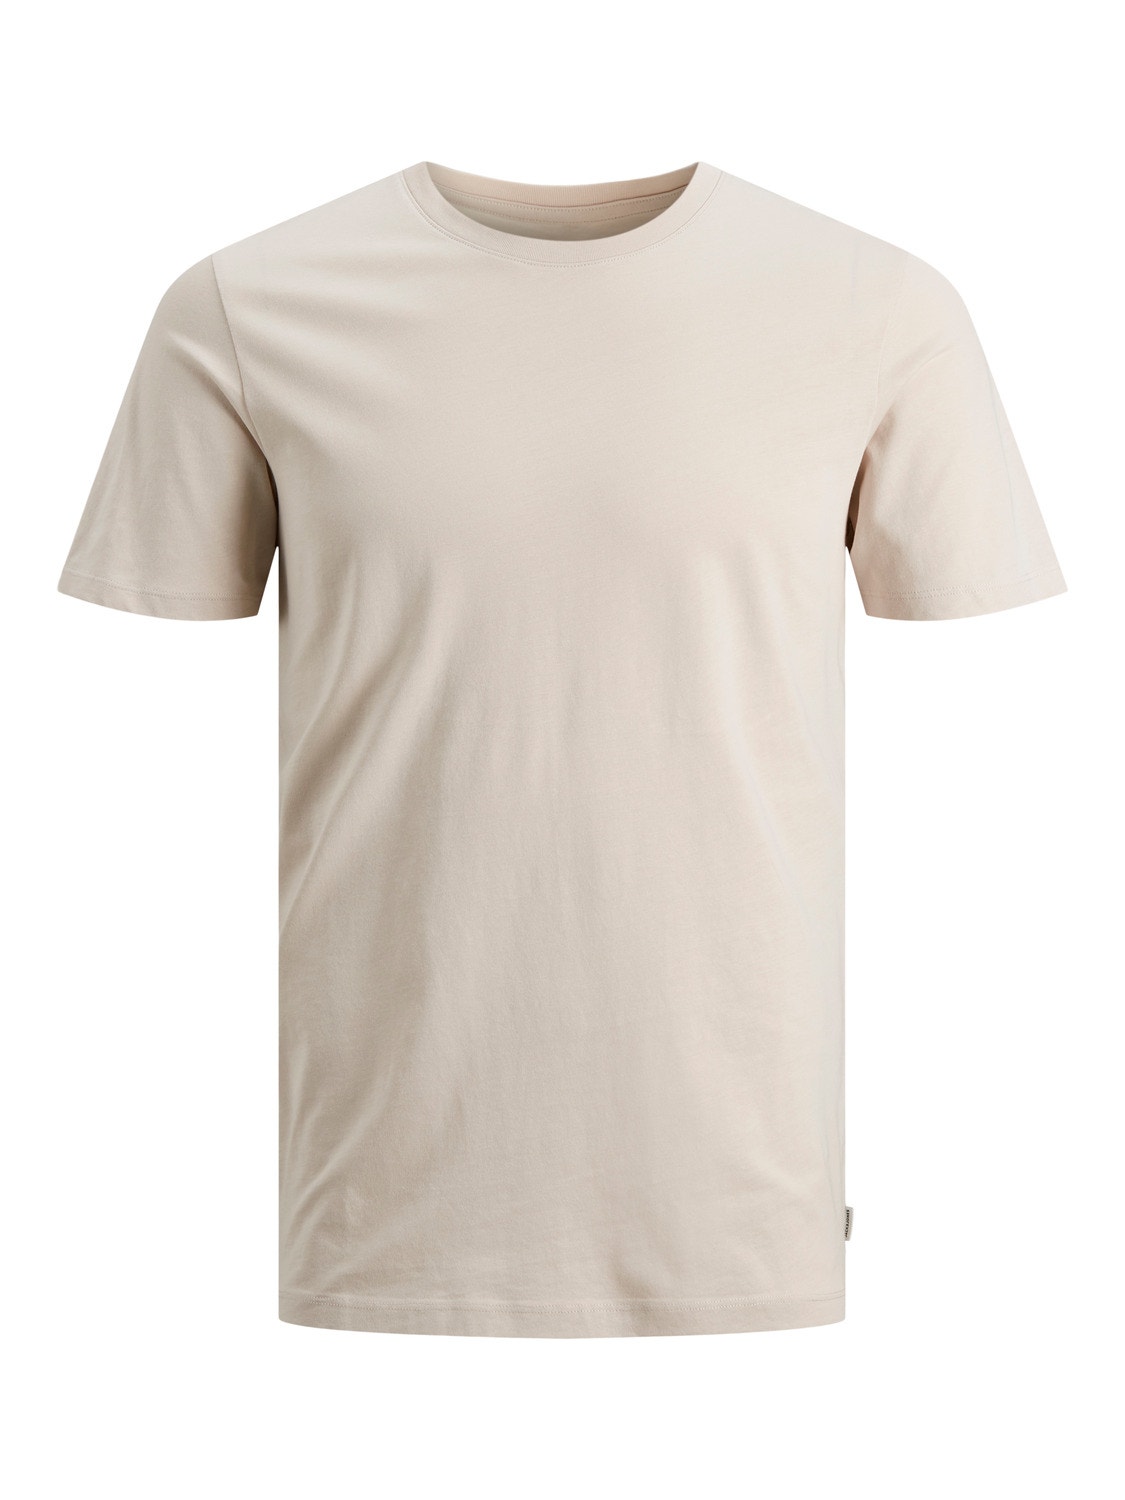 Jack & Jones T-shirt Liso Decote Redondo -Moonbeam - 12156101